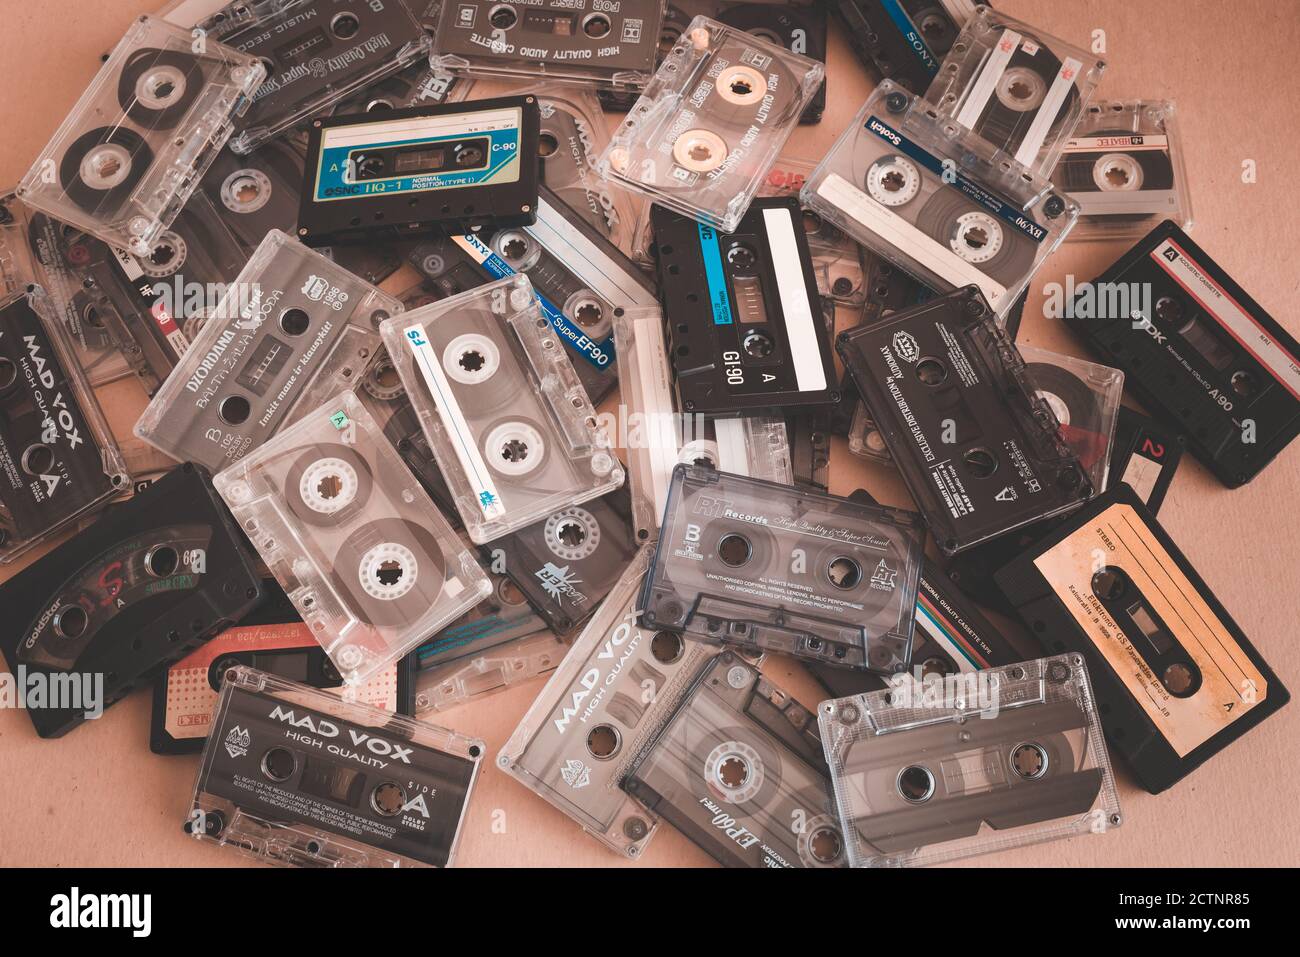 Diy Homemade Making Music Open Reel Cassette Tape Kit Audio